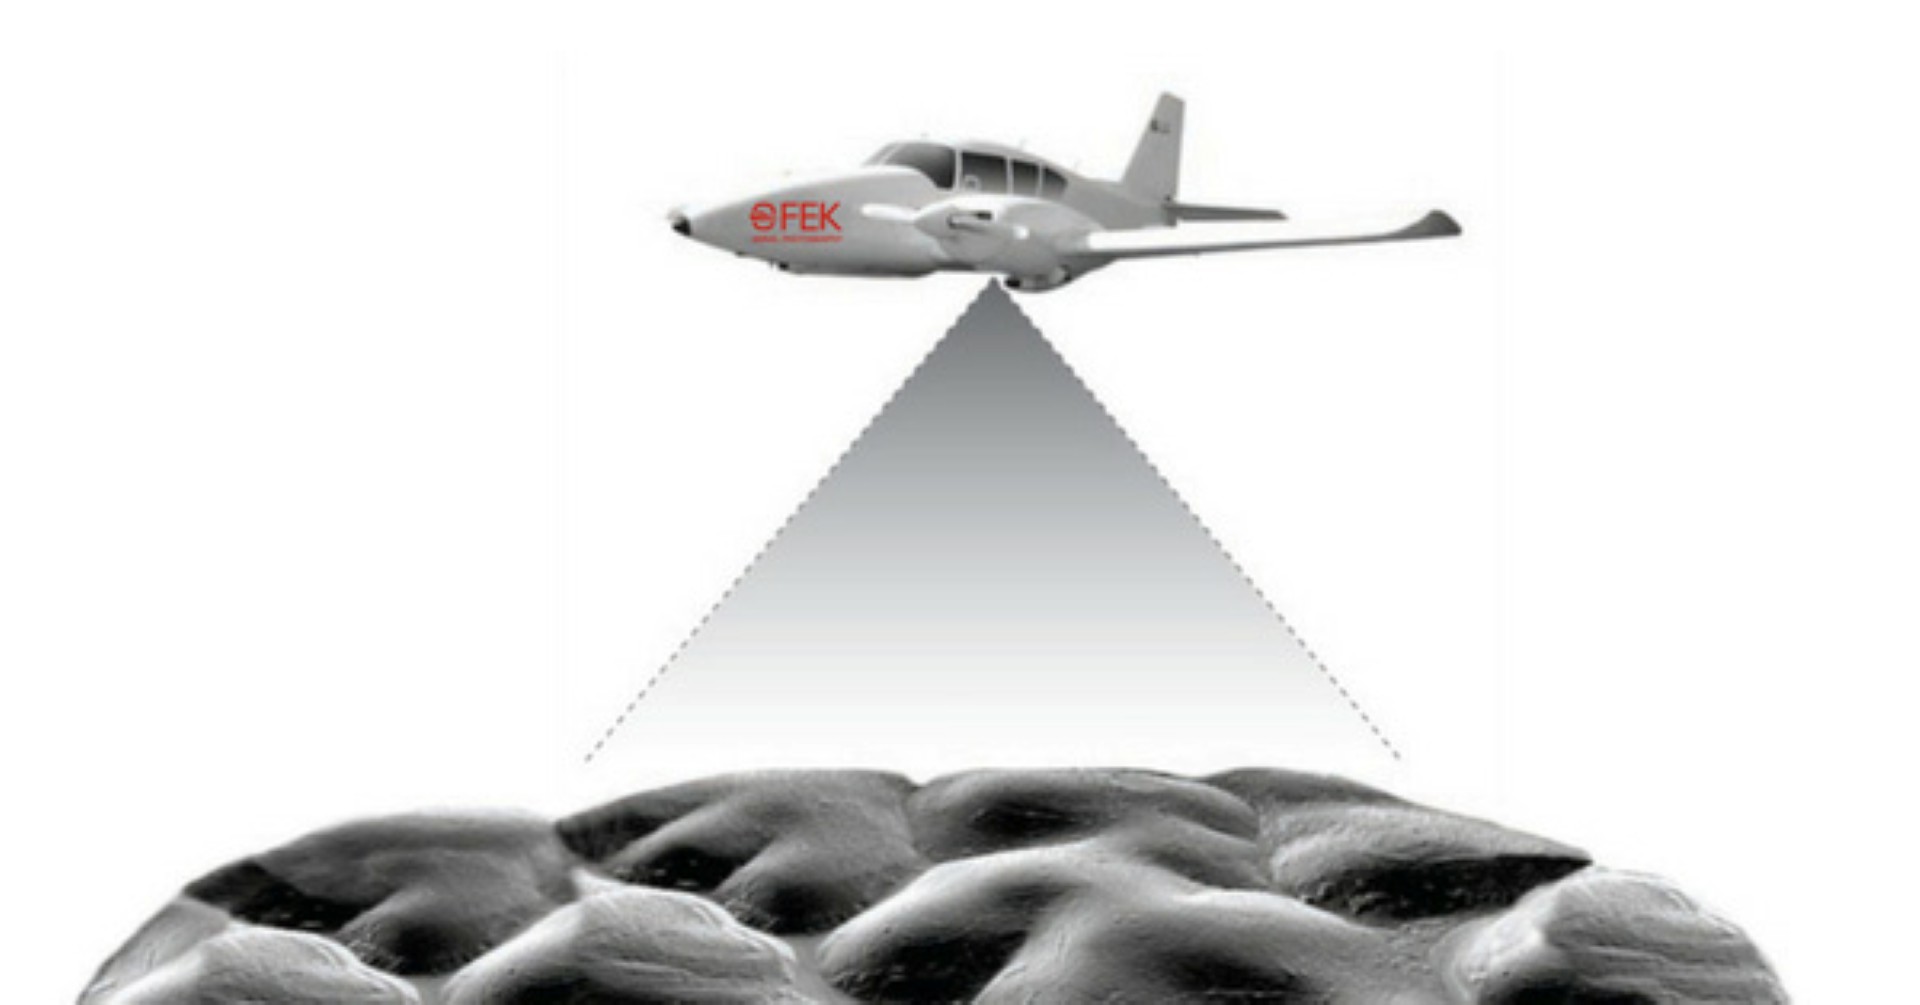 מיפוי מוטס בלייזר (LiDAR) לסריקה טופוגראפית מדויקת (צילום: אופק צילומי אויר) (צילום: אופק צילומי אויר)